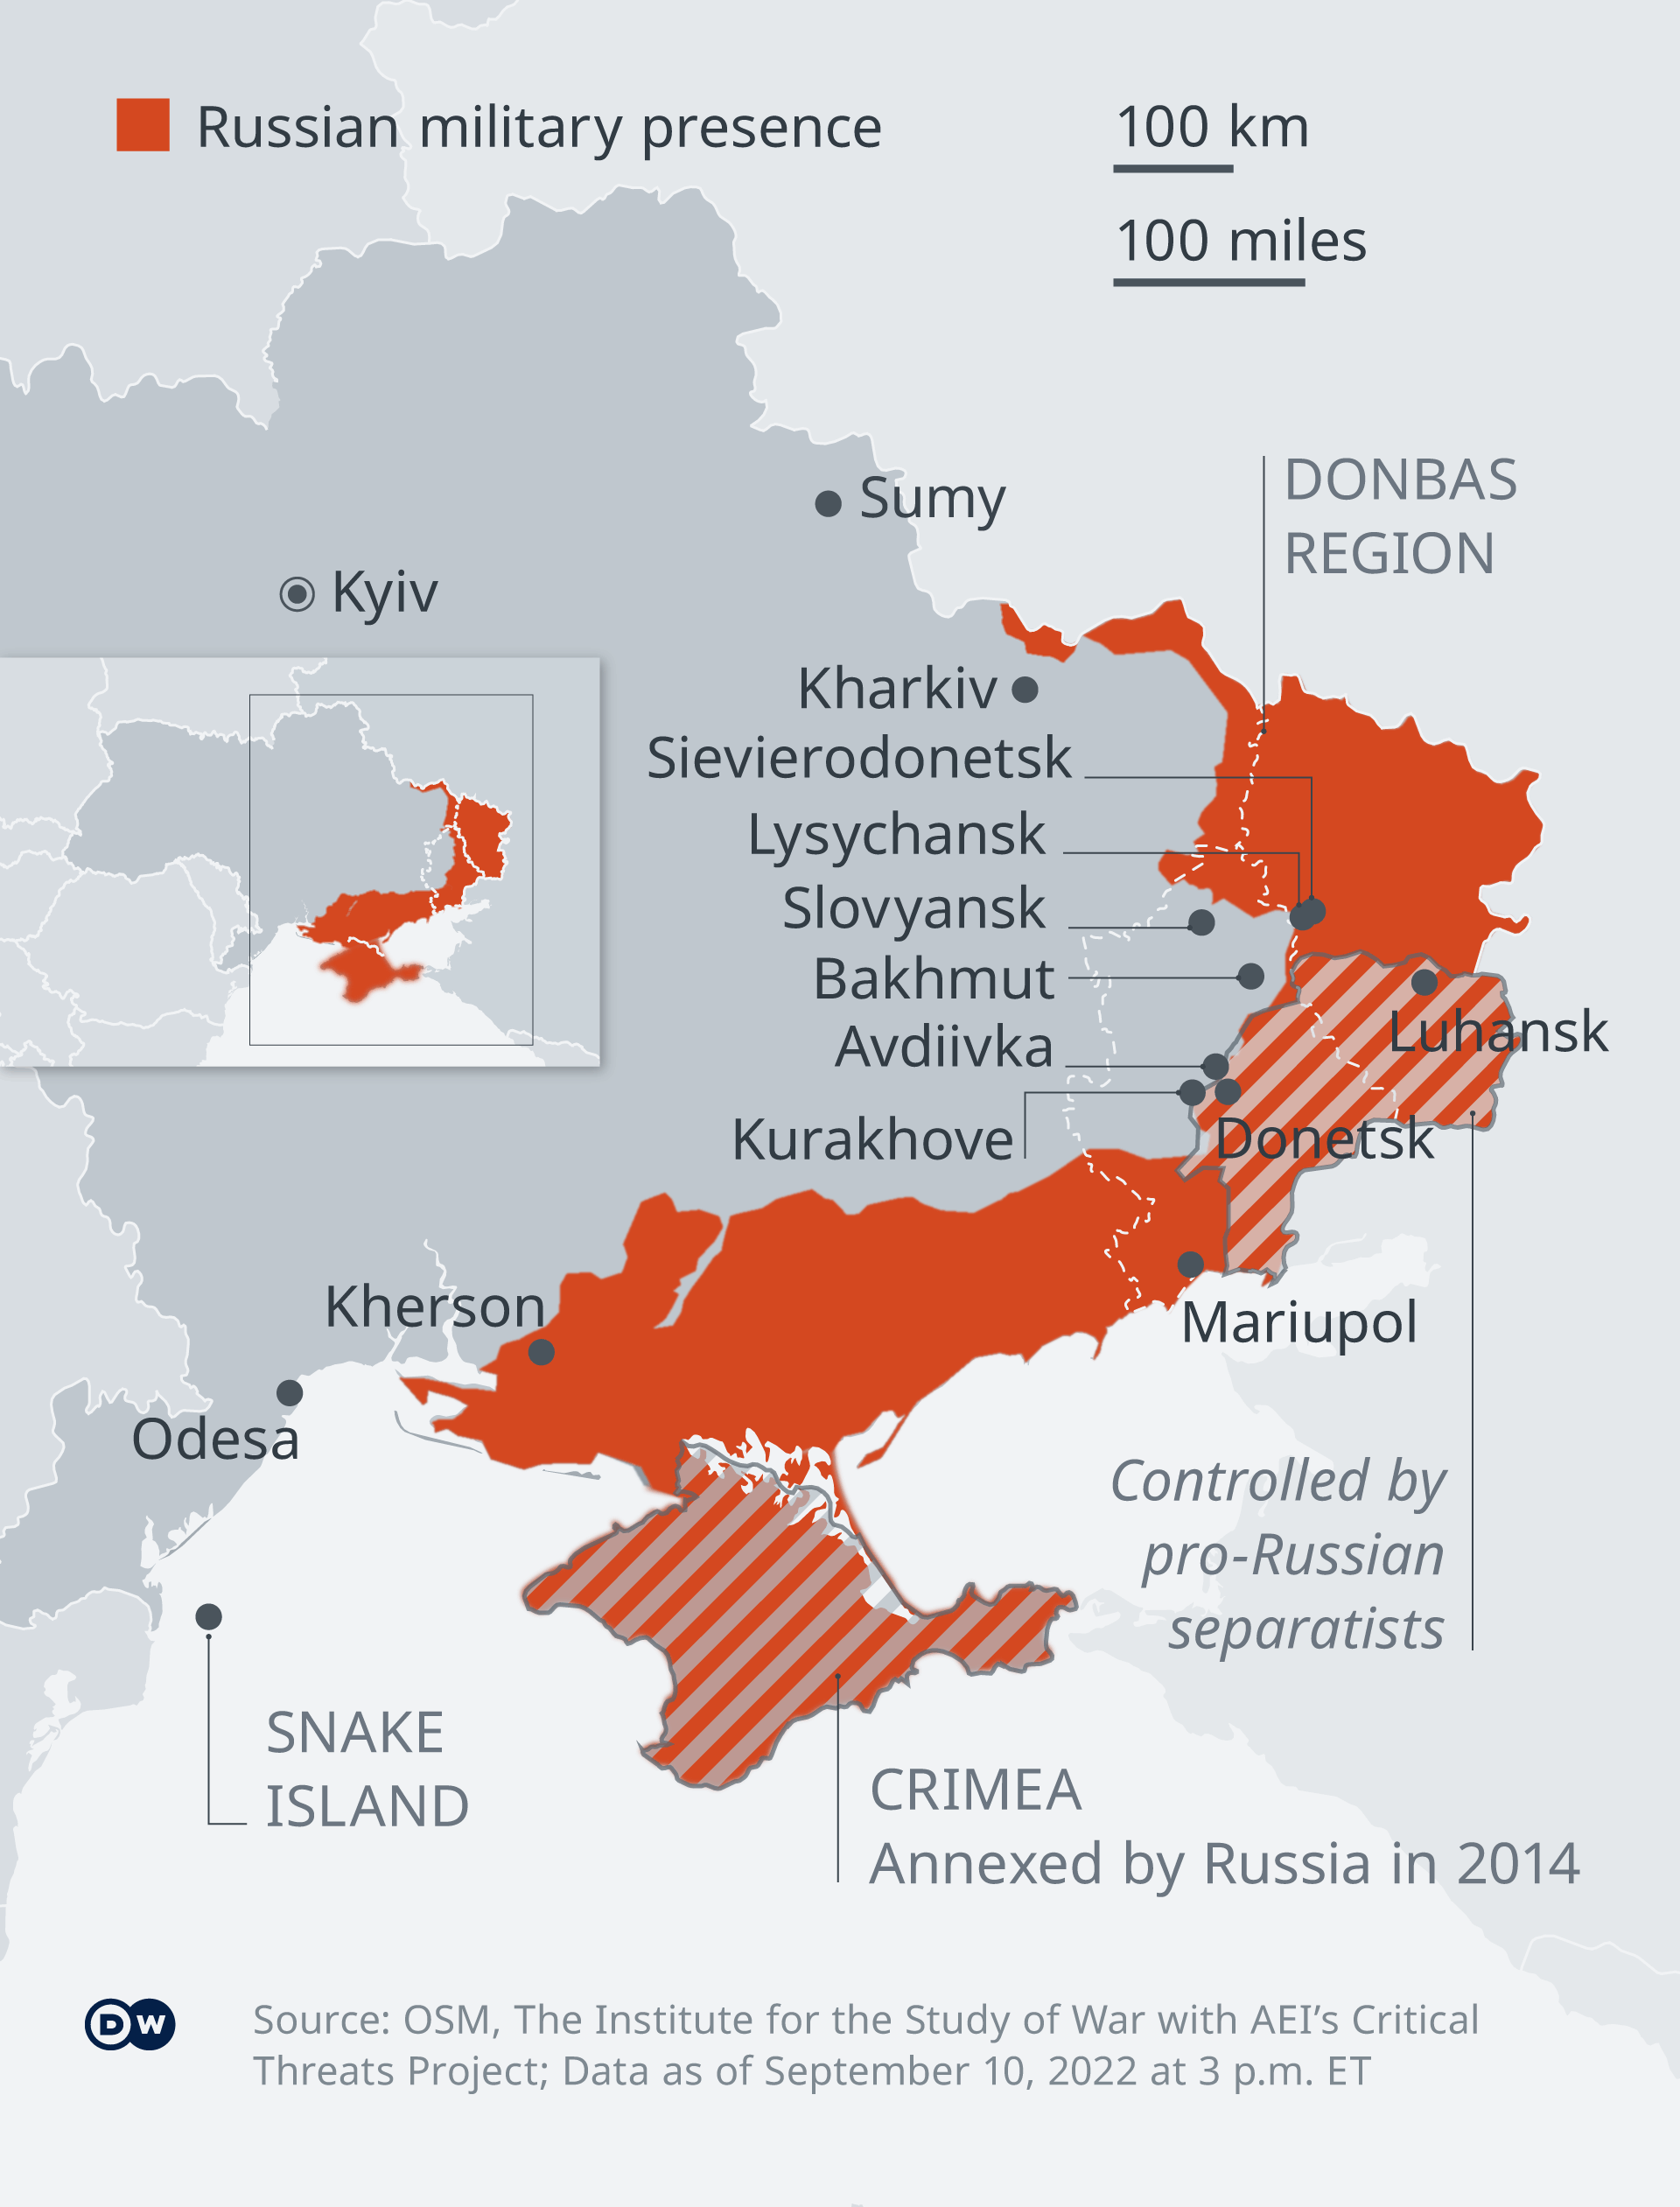  Картата демонстрира съветските завоевания в Южна Украйна дотук 